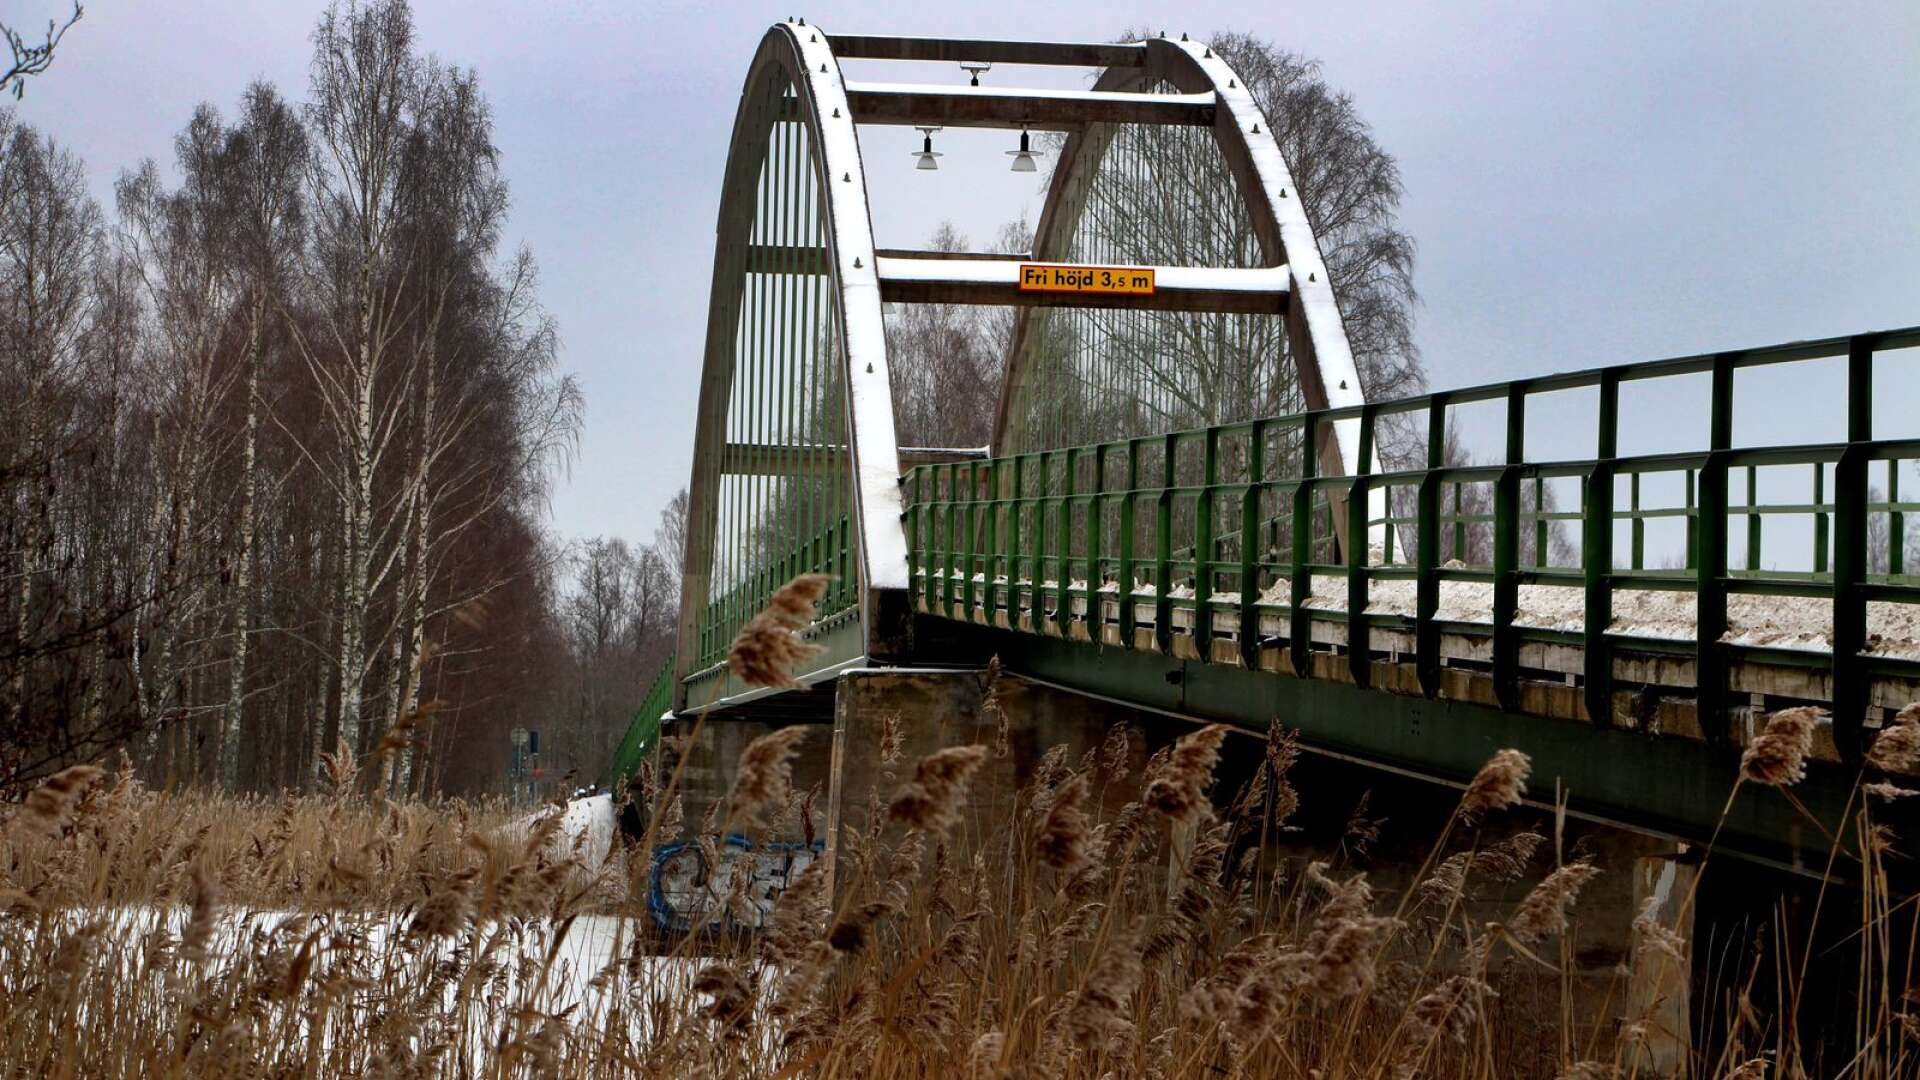 Karlstads kommun och Hammarö kommun ska vardera lägga 2 miljoner kronor i ett medfinansieringsavtal med Trafikverket för att ta fram en vägplan för en ny bro som ska ersätta Jakobsbergsbron. Men fördelningen av kostnaderna för brobygget är man inte överens om.